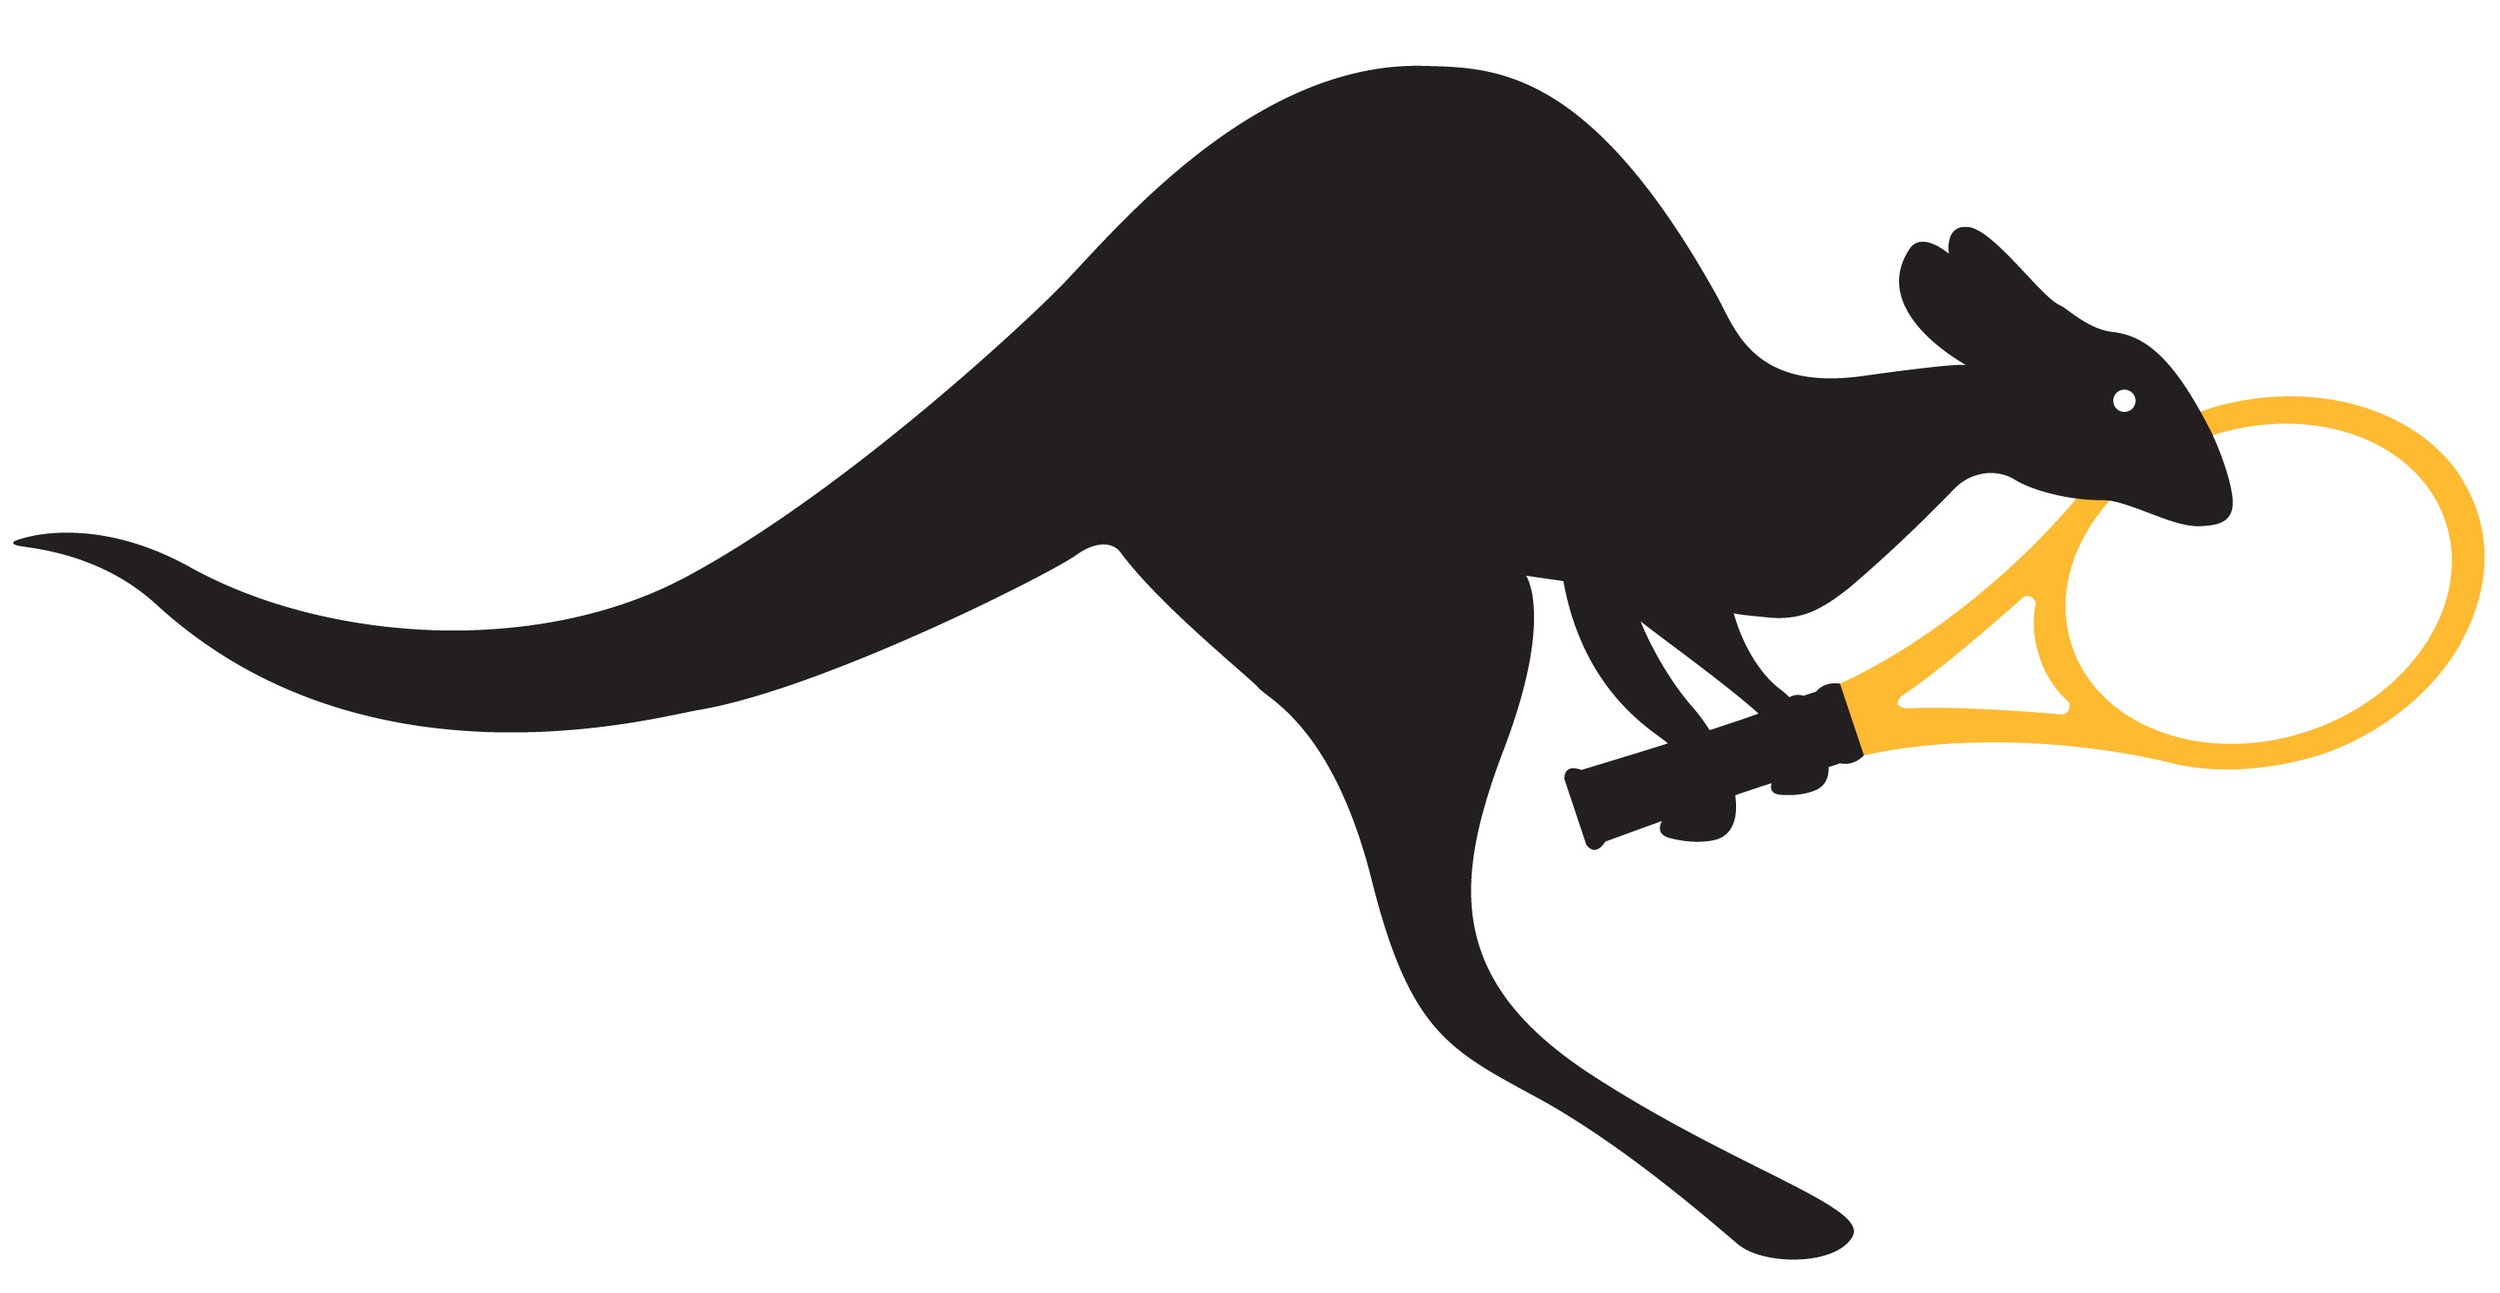 TCAOtee_kangaroo_illustration.jpg